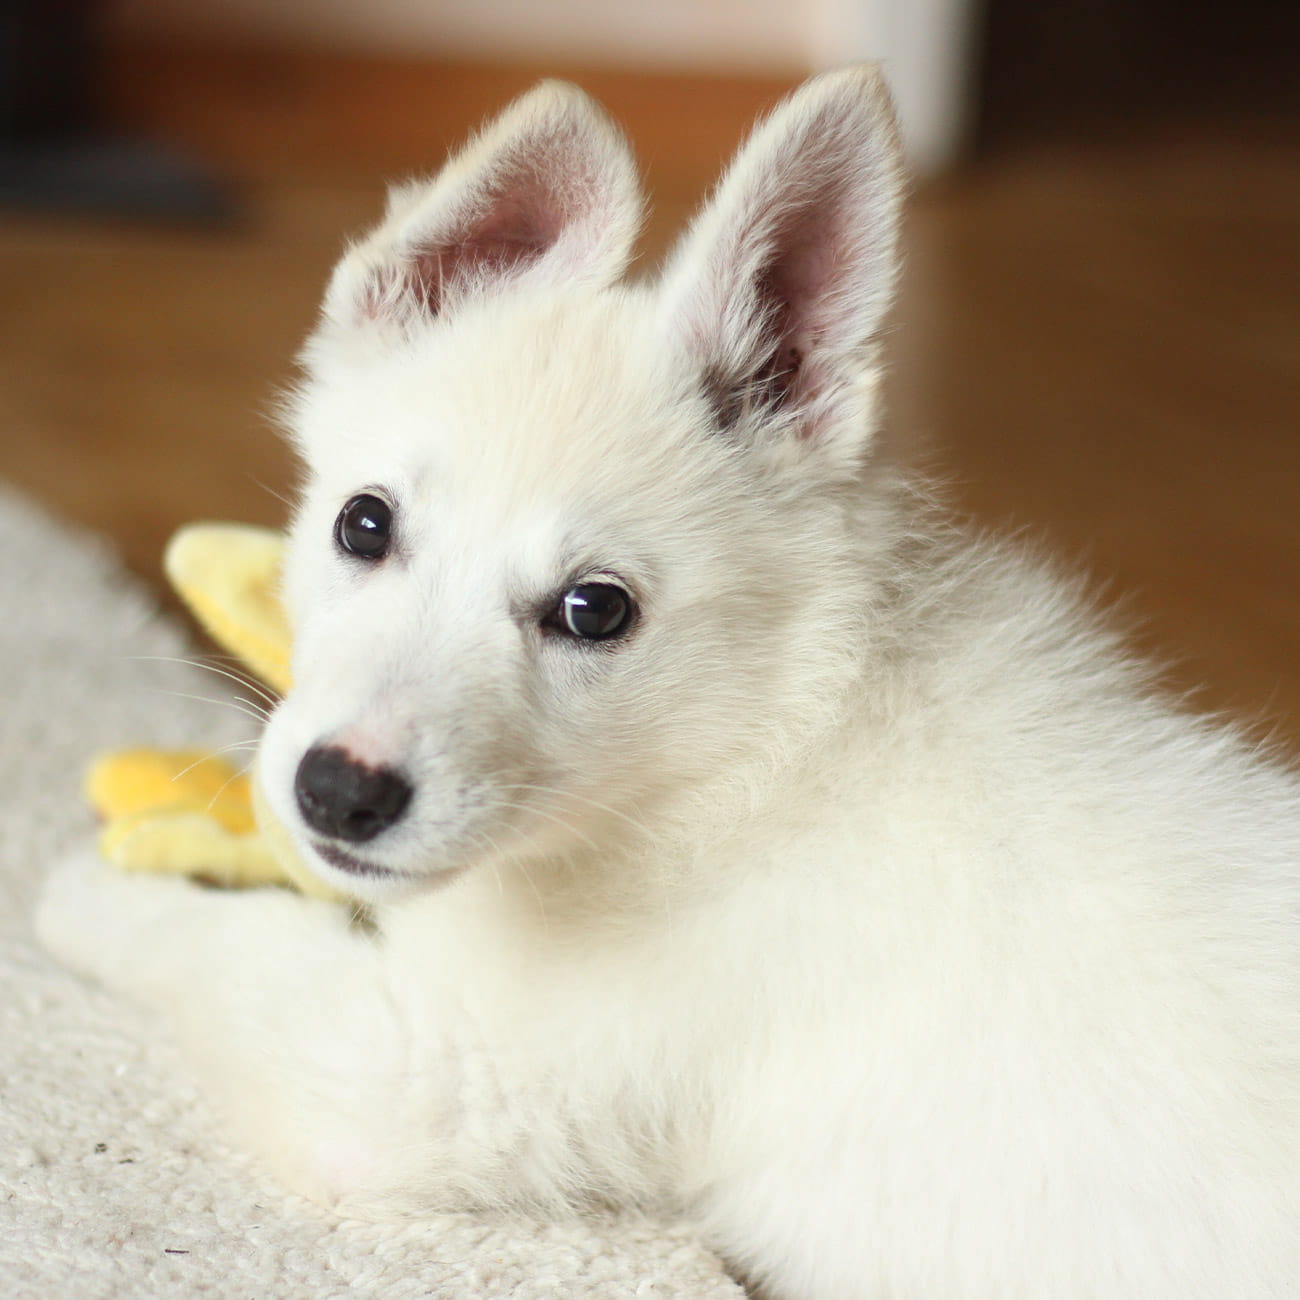 A white rescue puppy